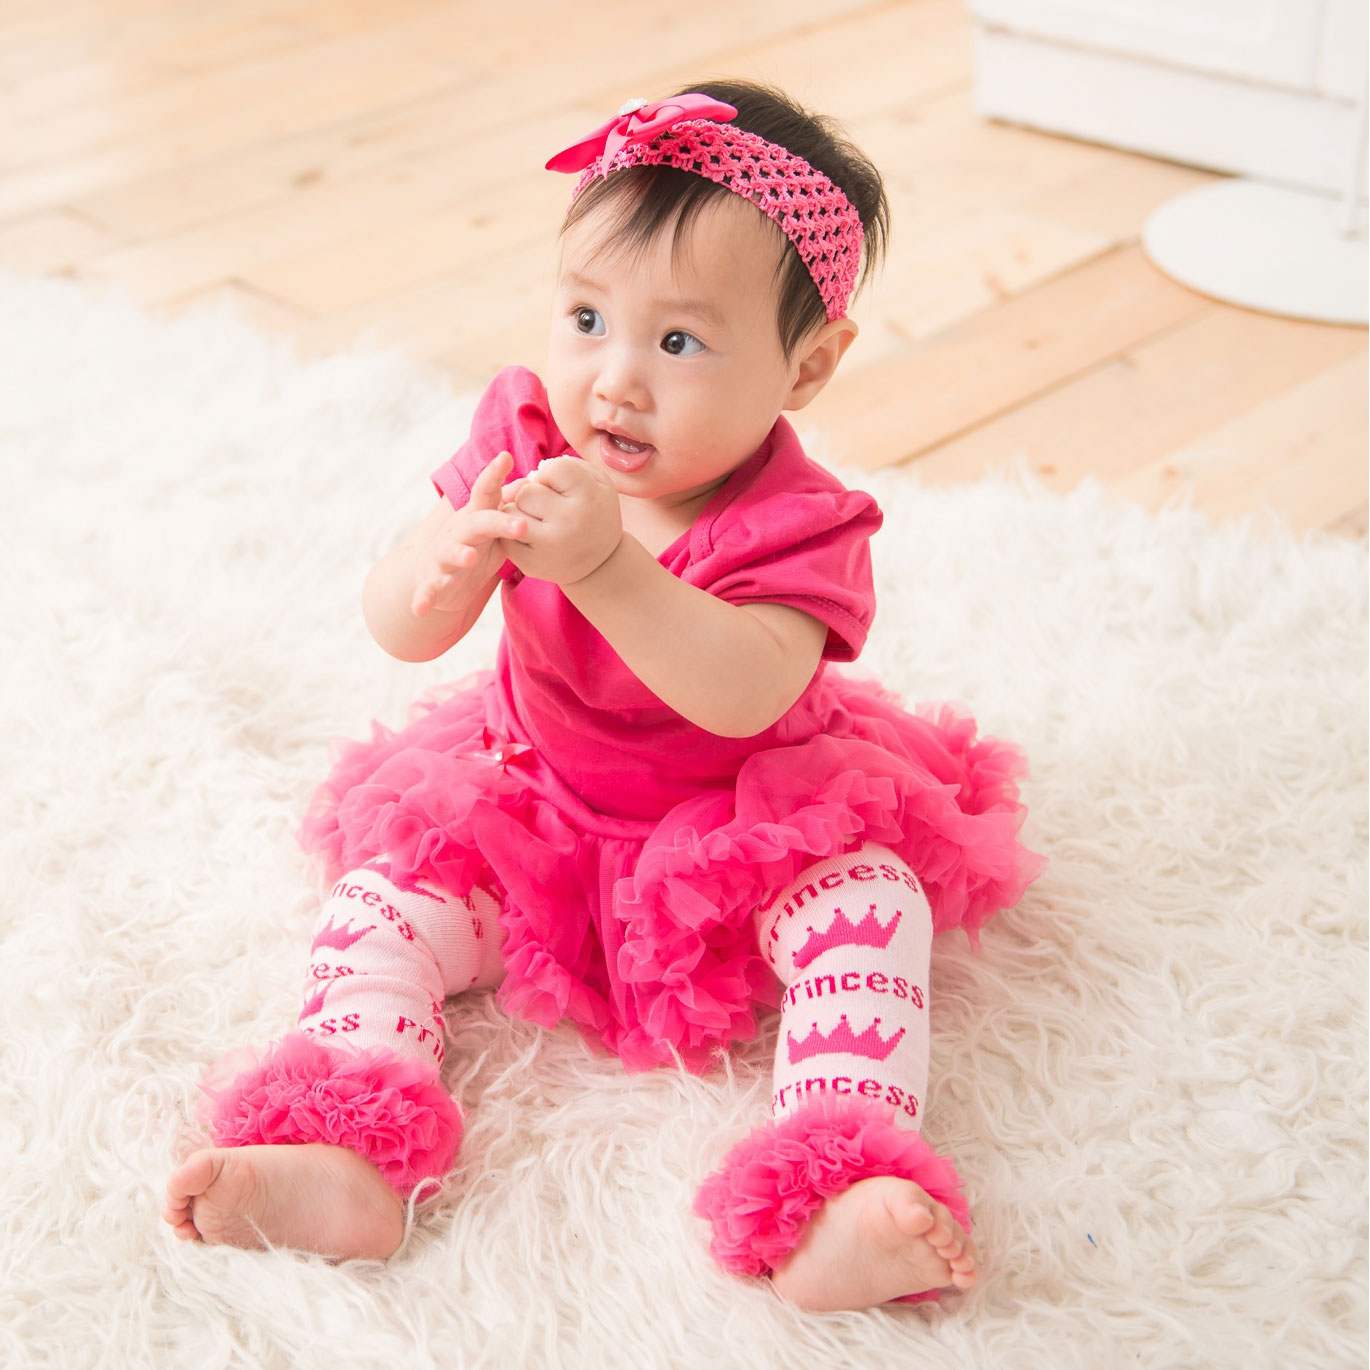 日安朵朵 女嬰雪紡蓬蓬裙連身衣禮盒 - 桃紅芭比(衣+圍兜+寶寶襪) (12-18個月)